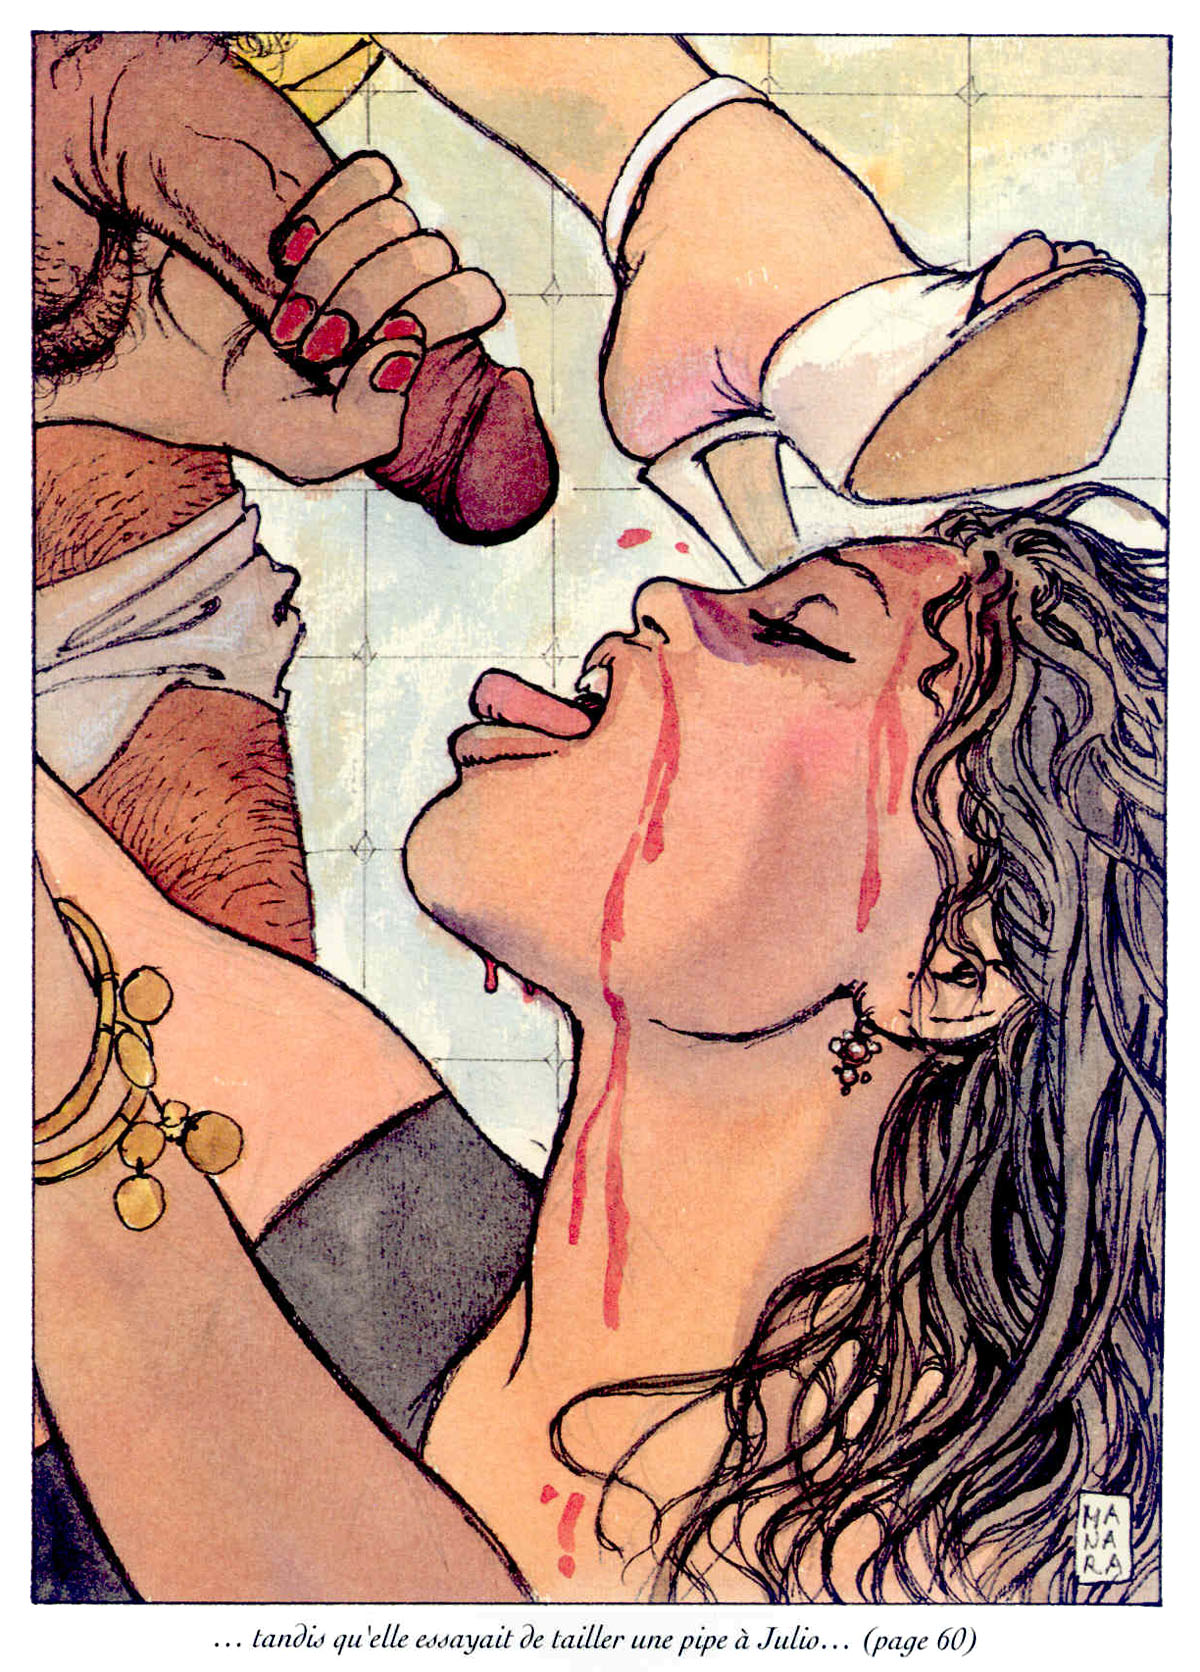 Comic erotic illustrated